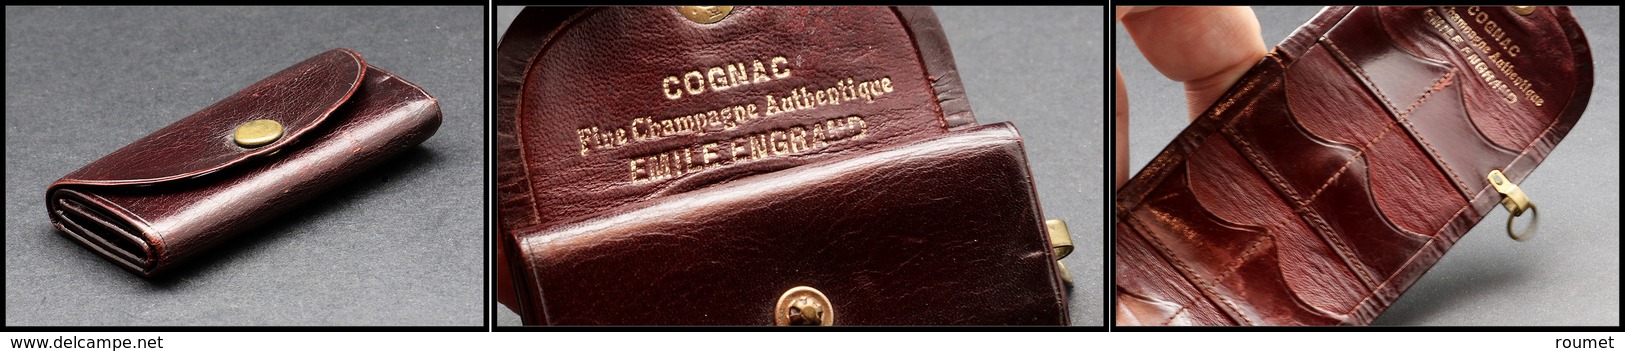 Etui En Cuir Avec Boucle, Marqué "Cognac Fine Champagne Emile Engrand", 8 Comp., H.62xl.30mm. - TB - Boites A Timbres